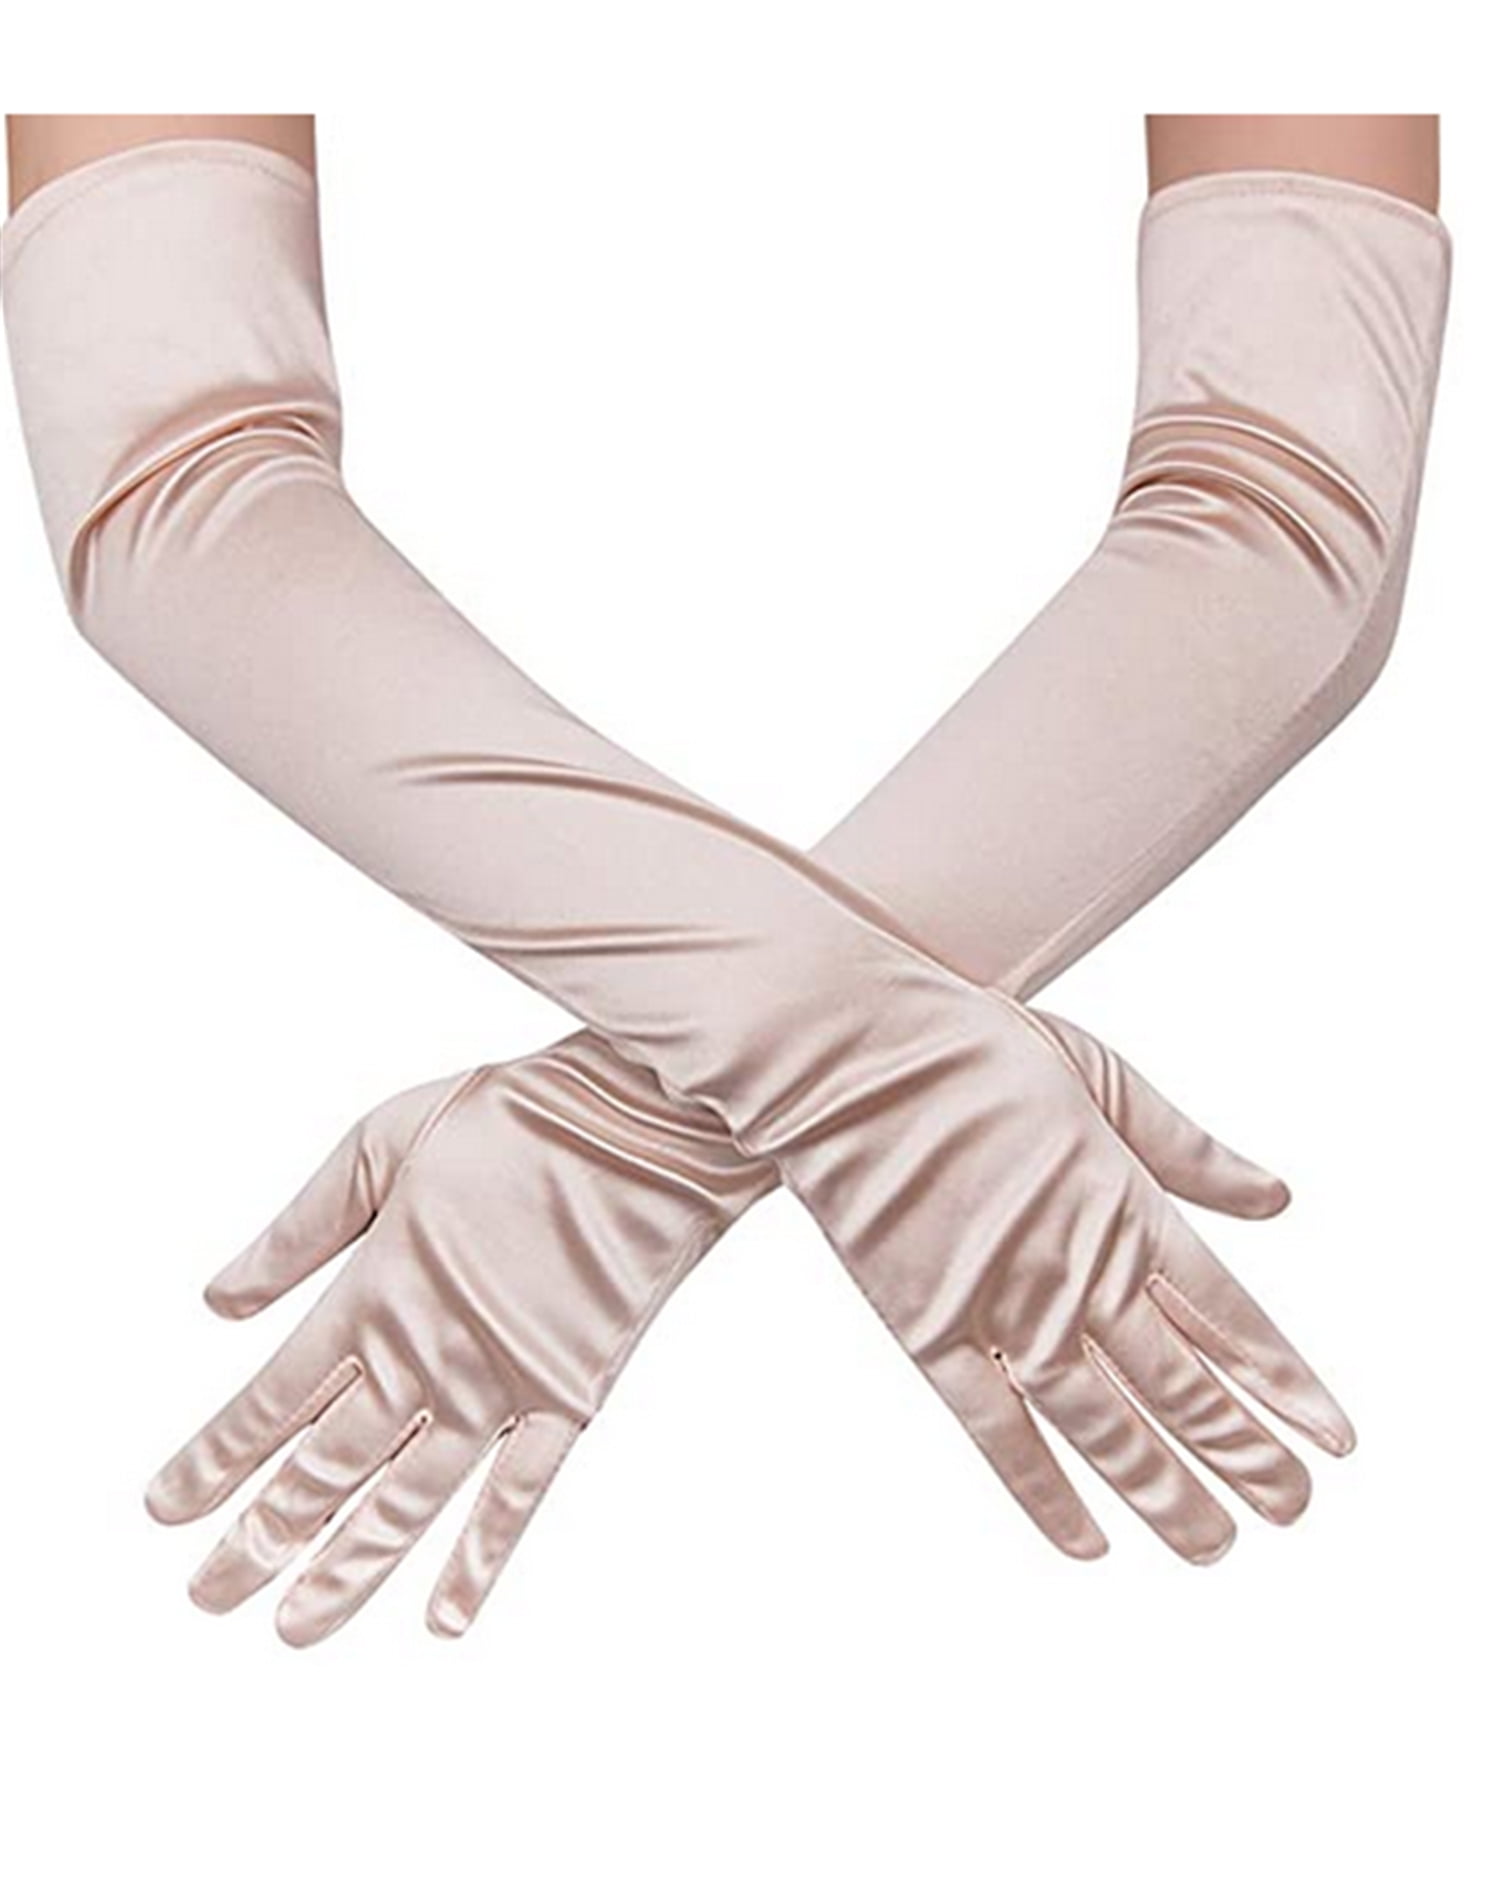 Women's Evening Party Formal Gloves  22" Long Black White Satin Finger Mittens 